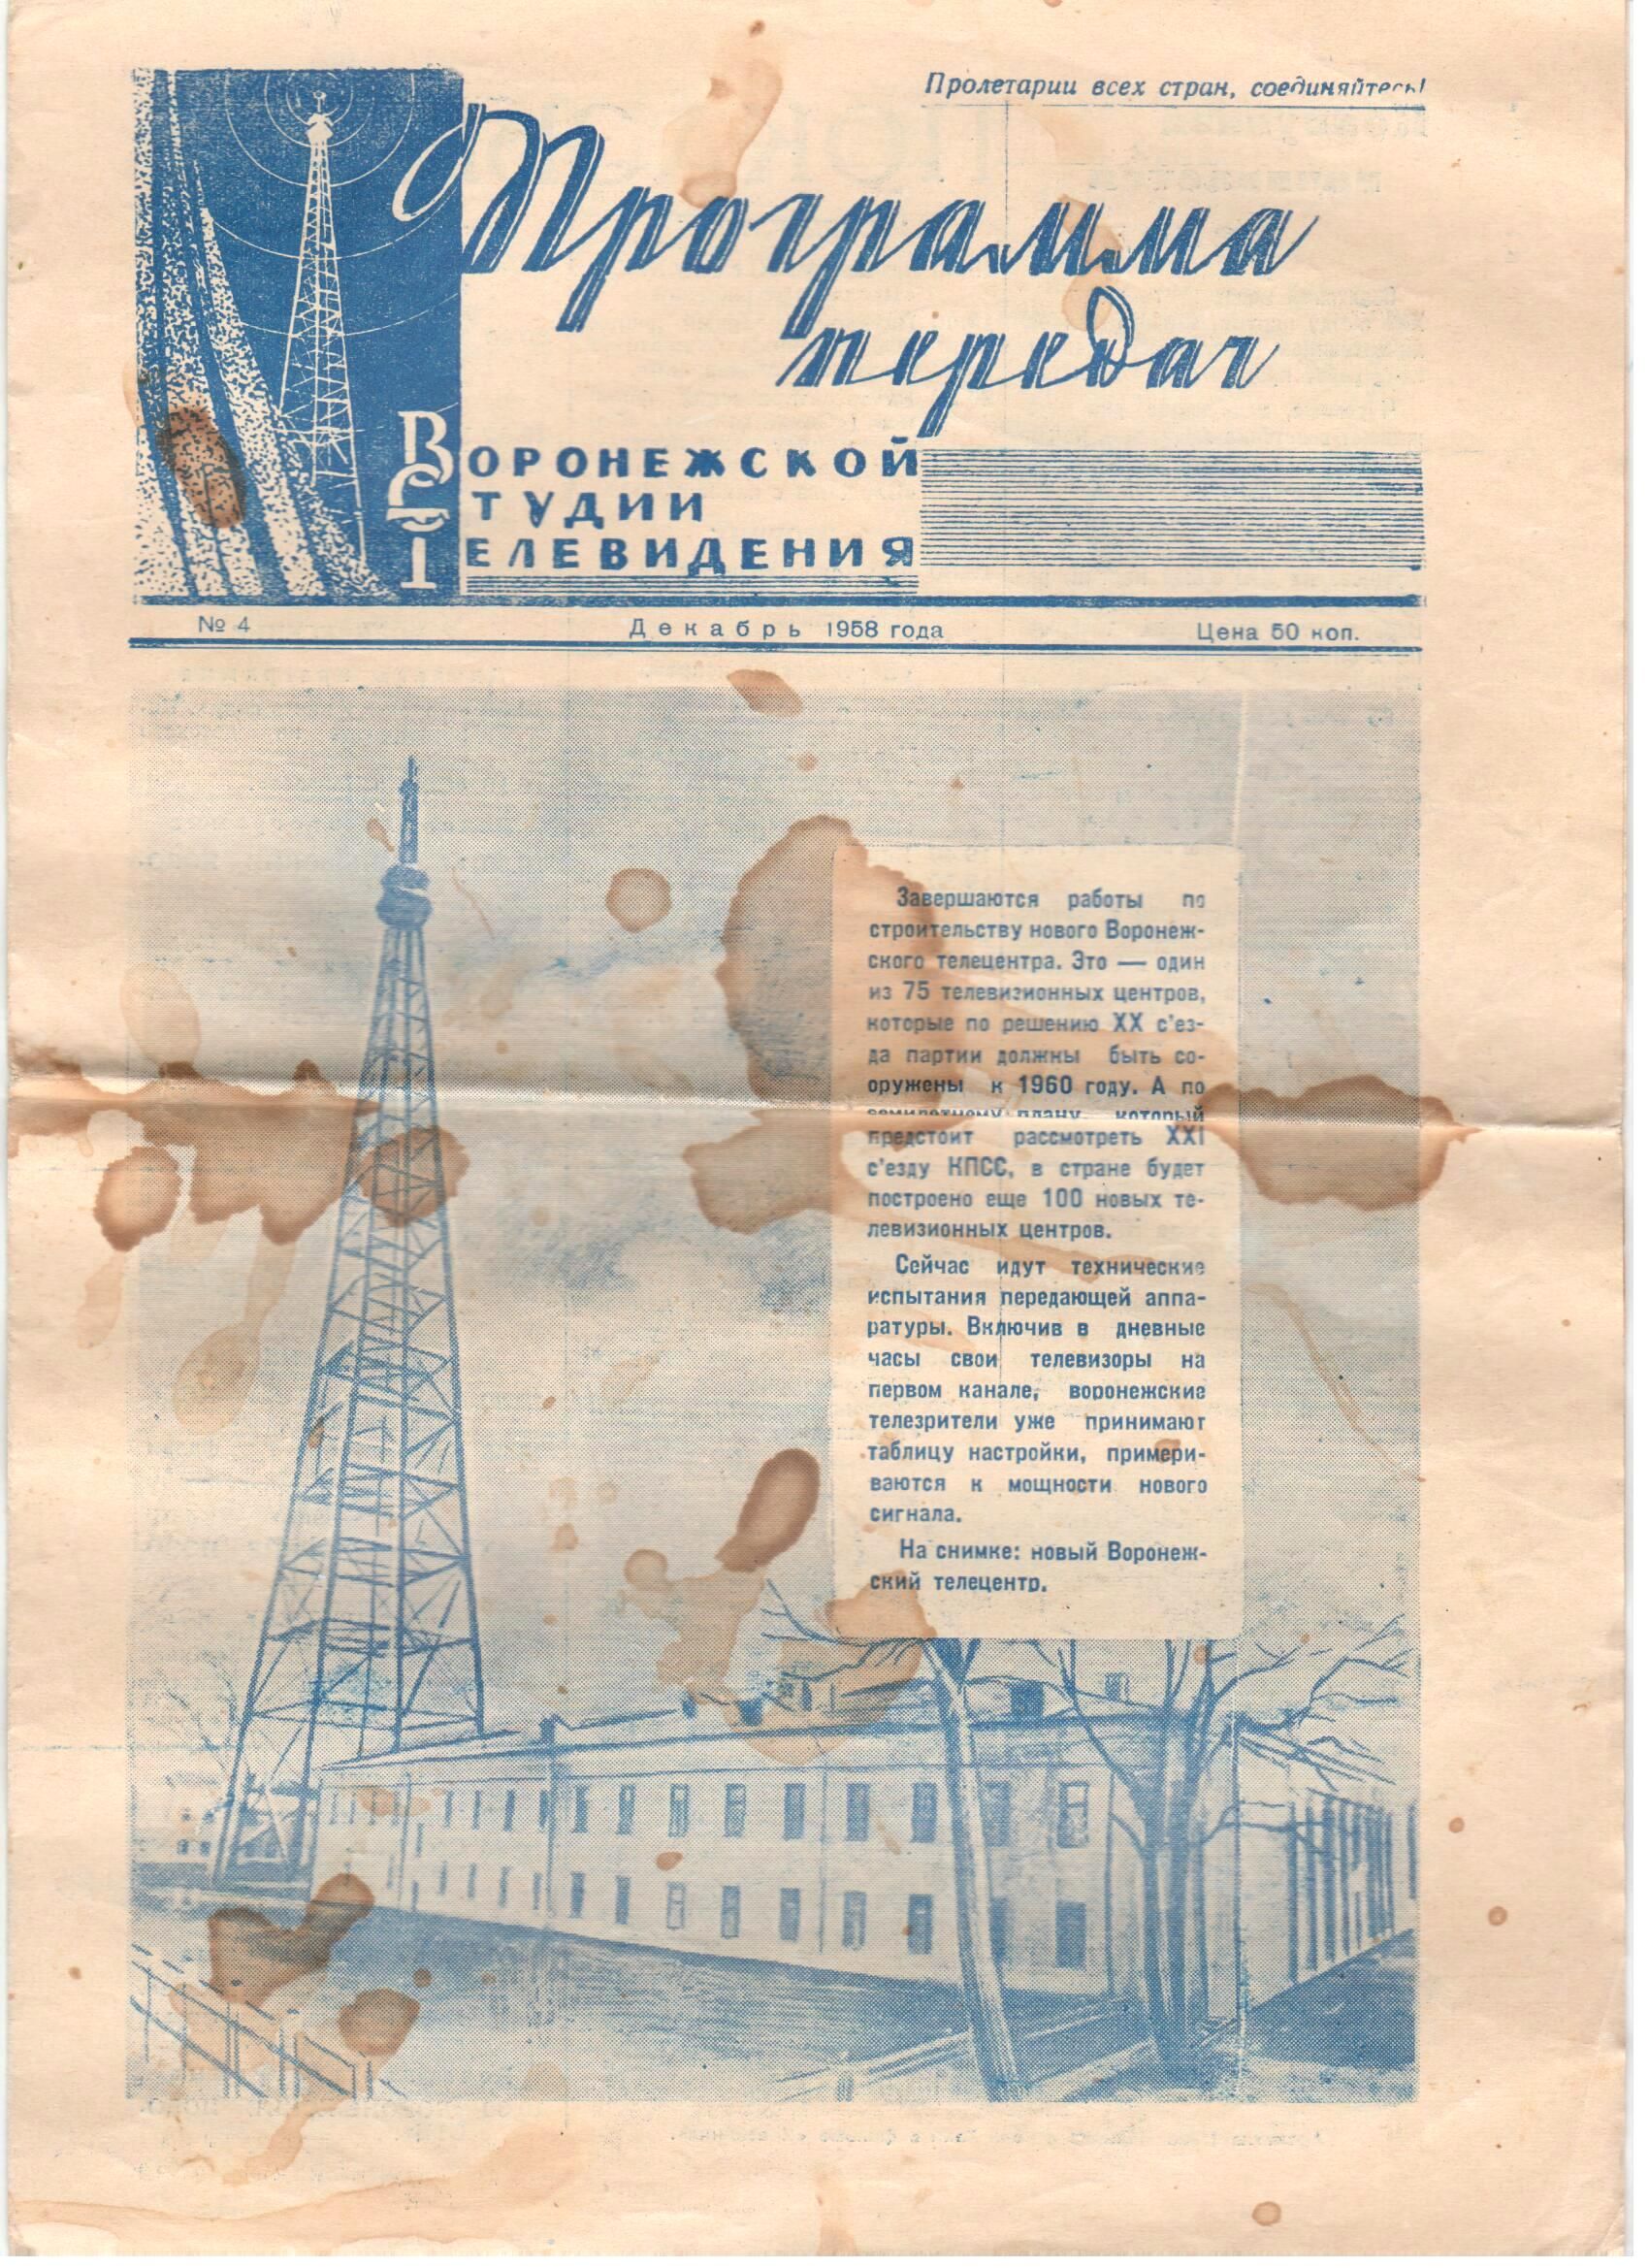 Декабрь 1958 года. История Воронежского телевидения.